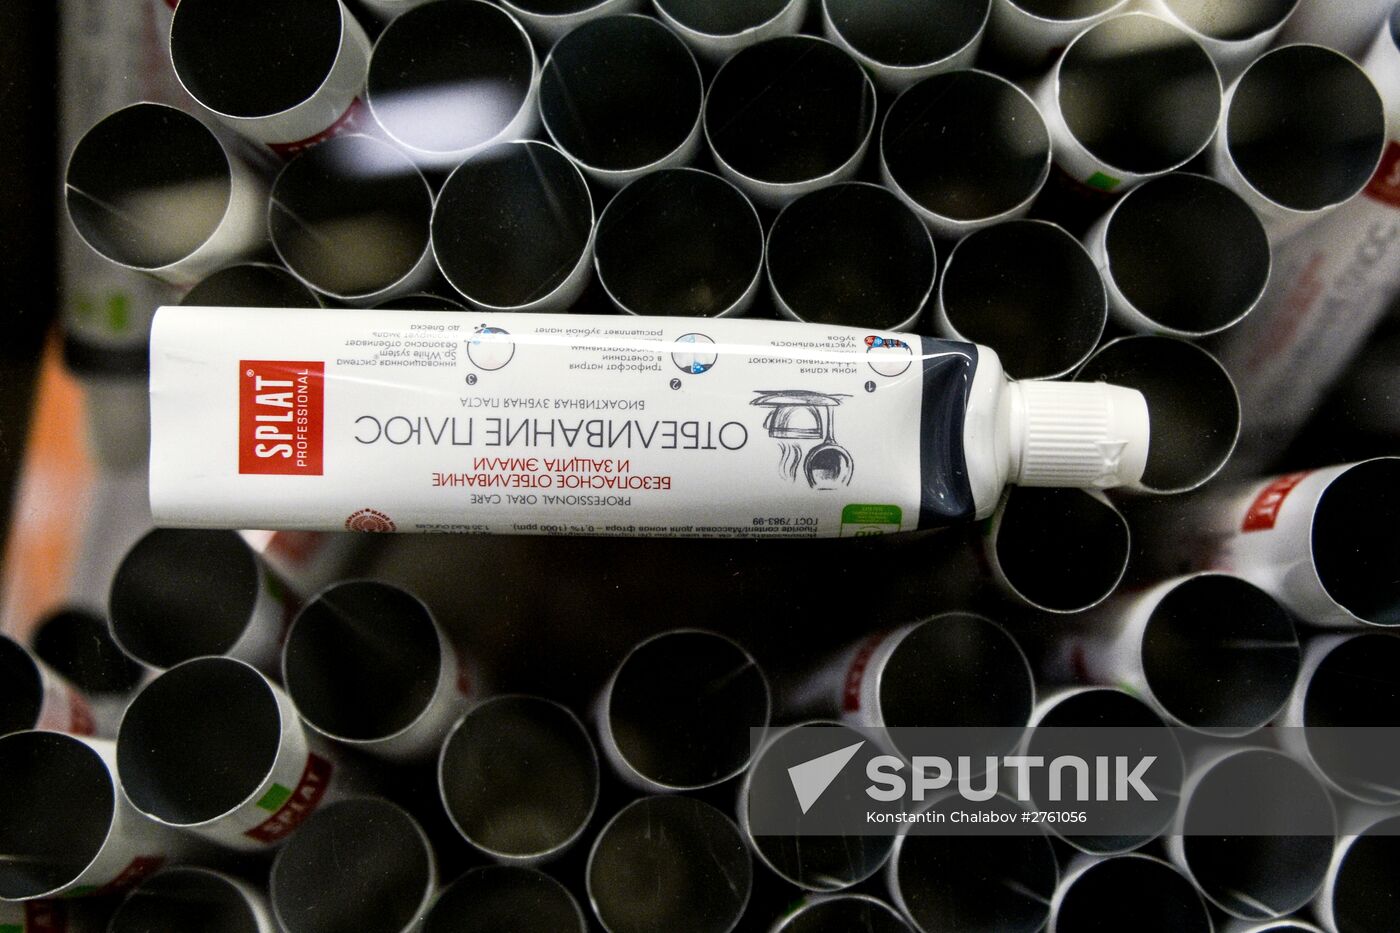 Splat toothpaste produced in Novgorod Region